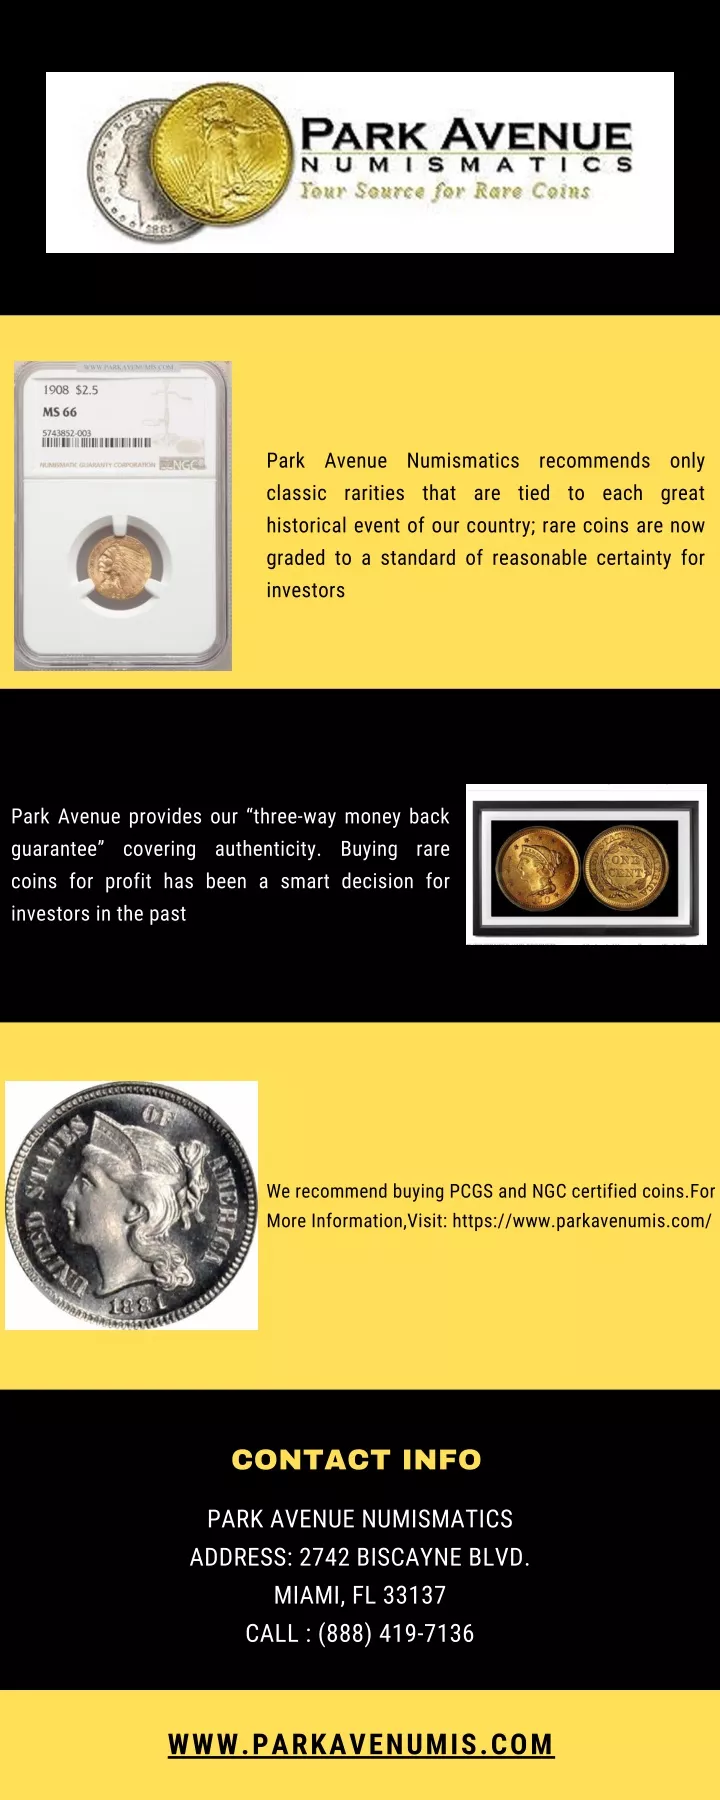 park avenue numismatics recommends only classic